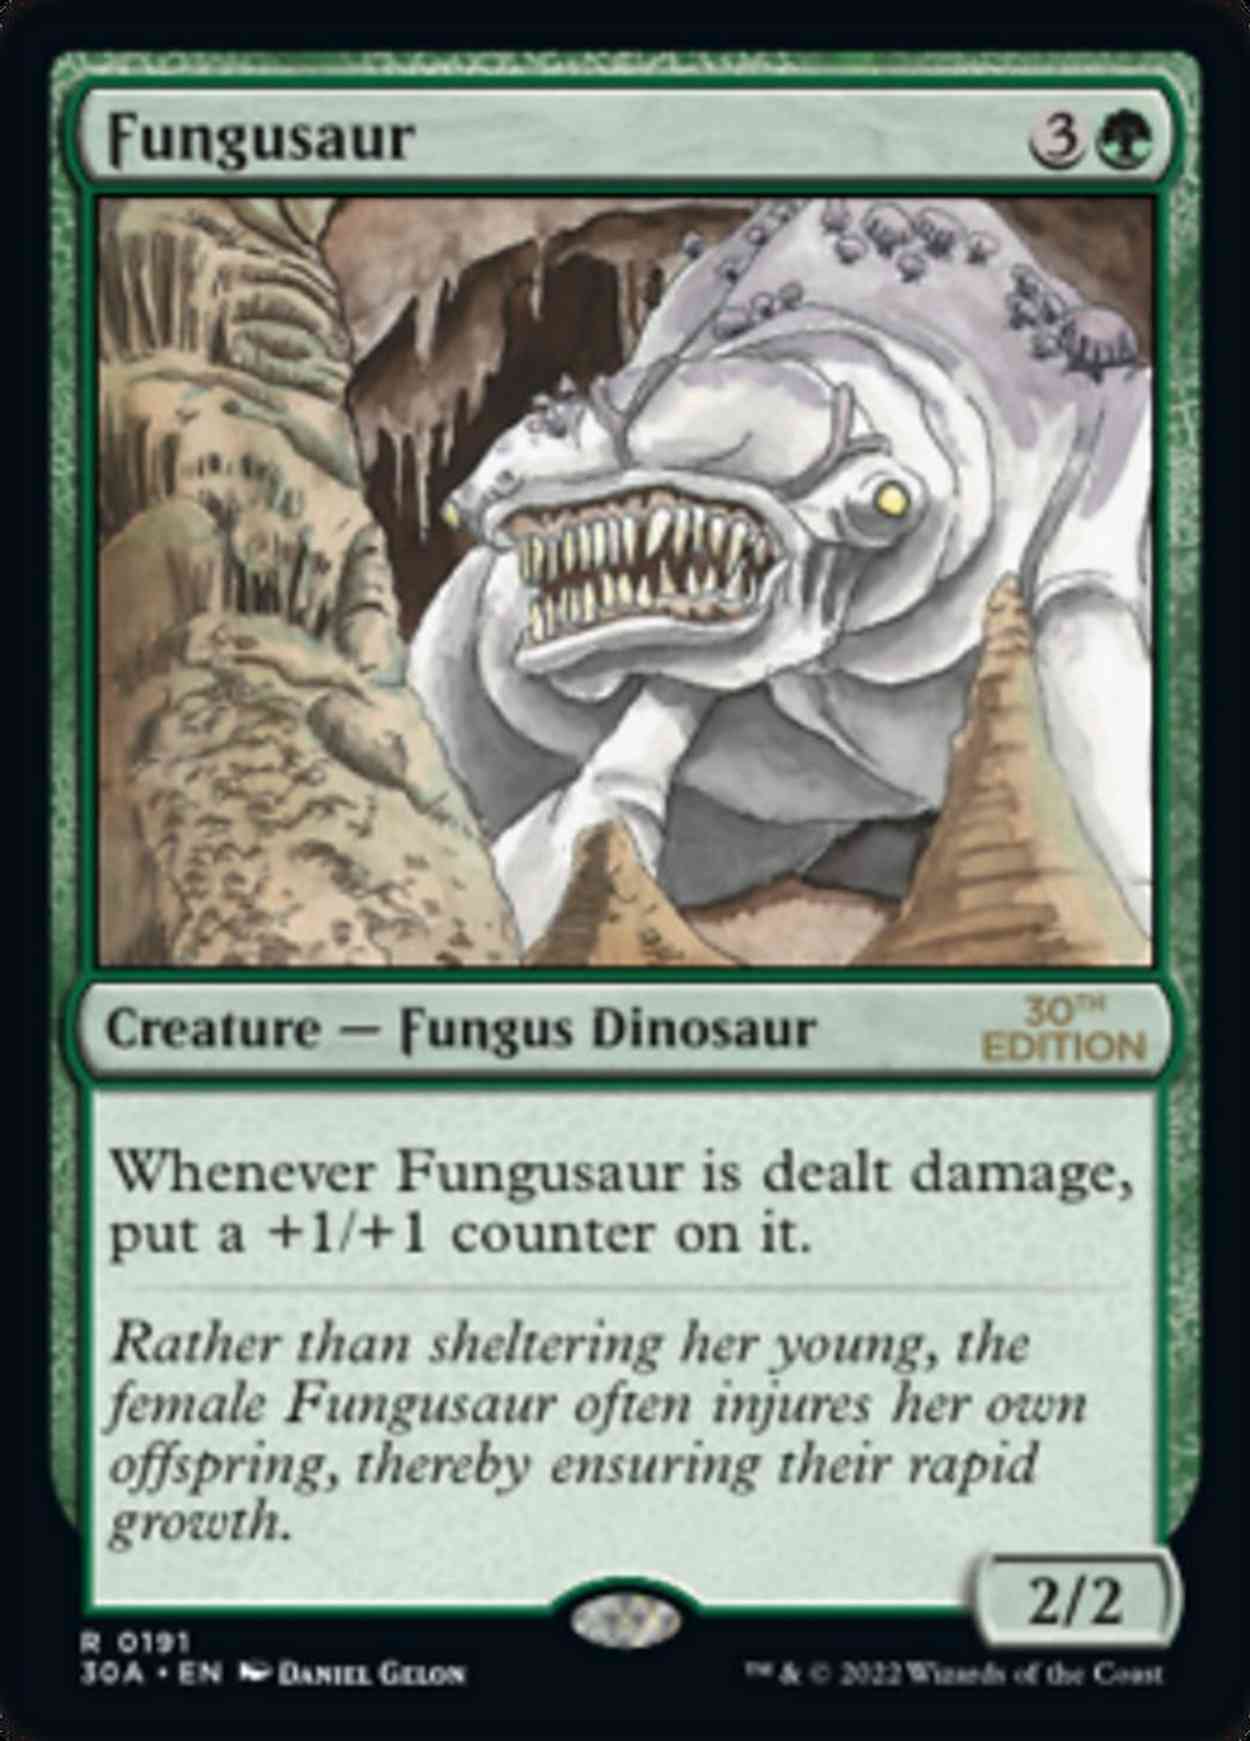 Fungusaur magic card front